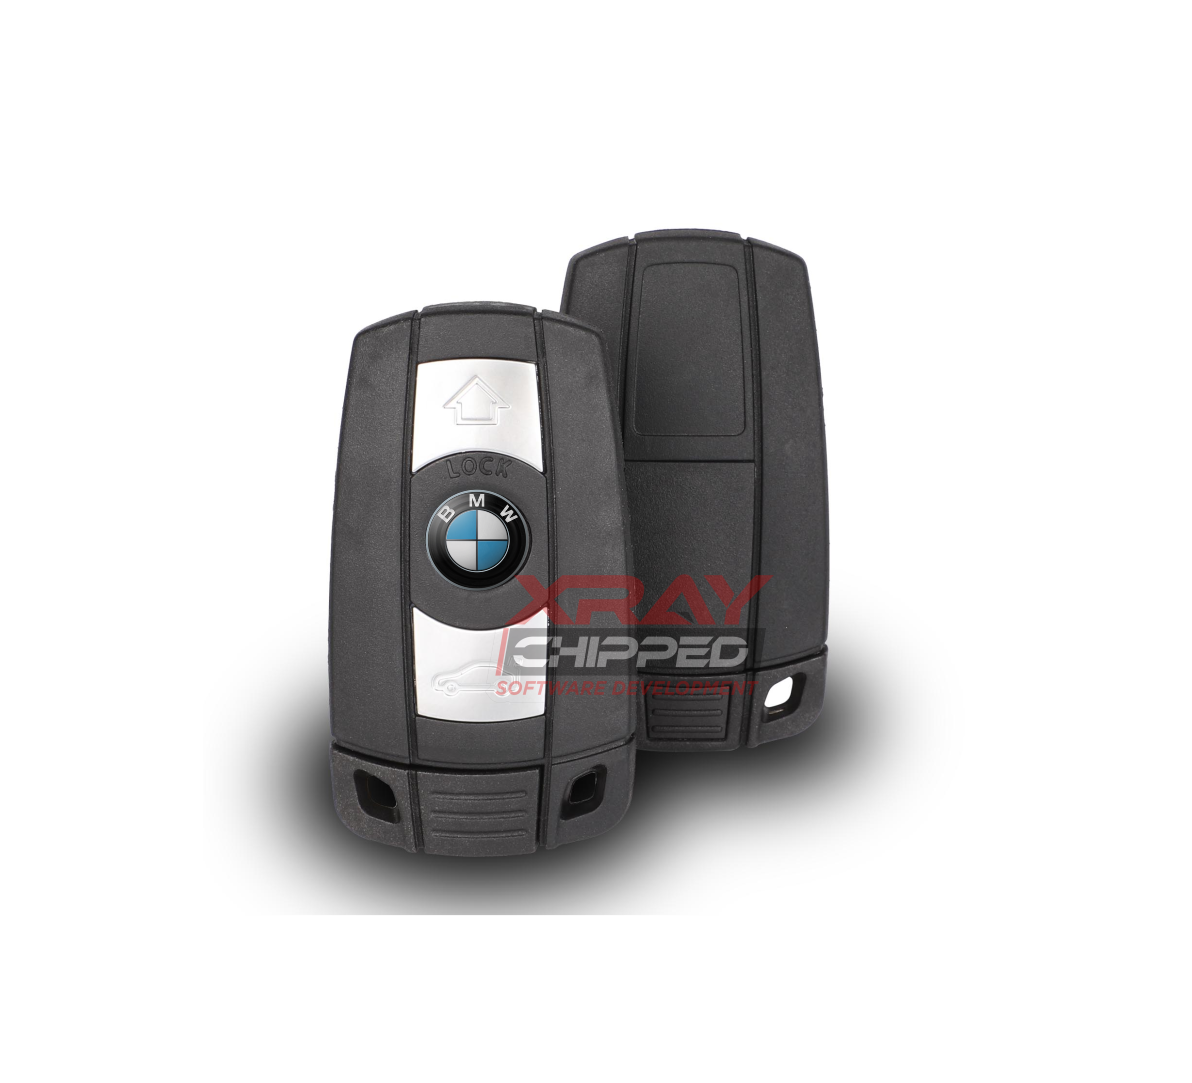 BMW Serie 1/2/3/4/5/6/7/X5/X6/Z4 Del 2002 al 2013 Frecuencia 433-7945